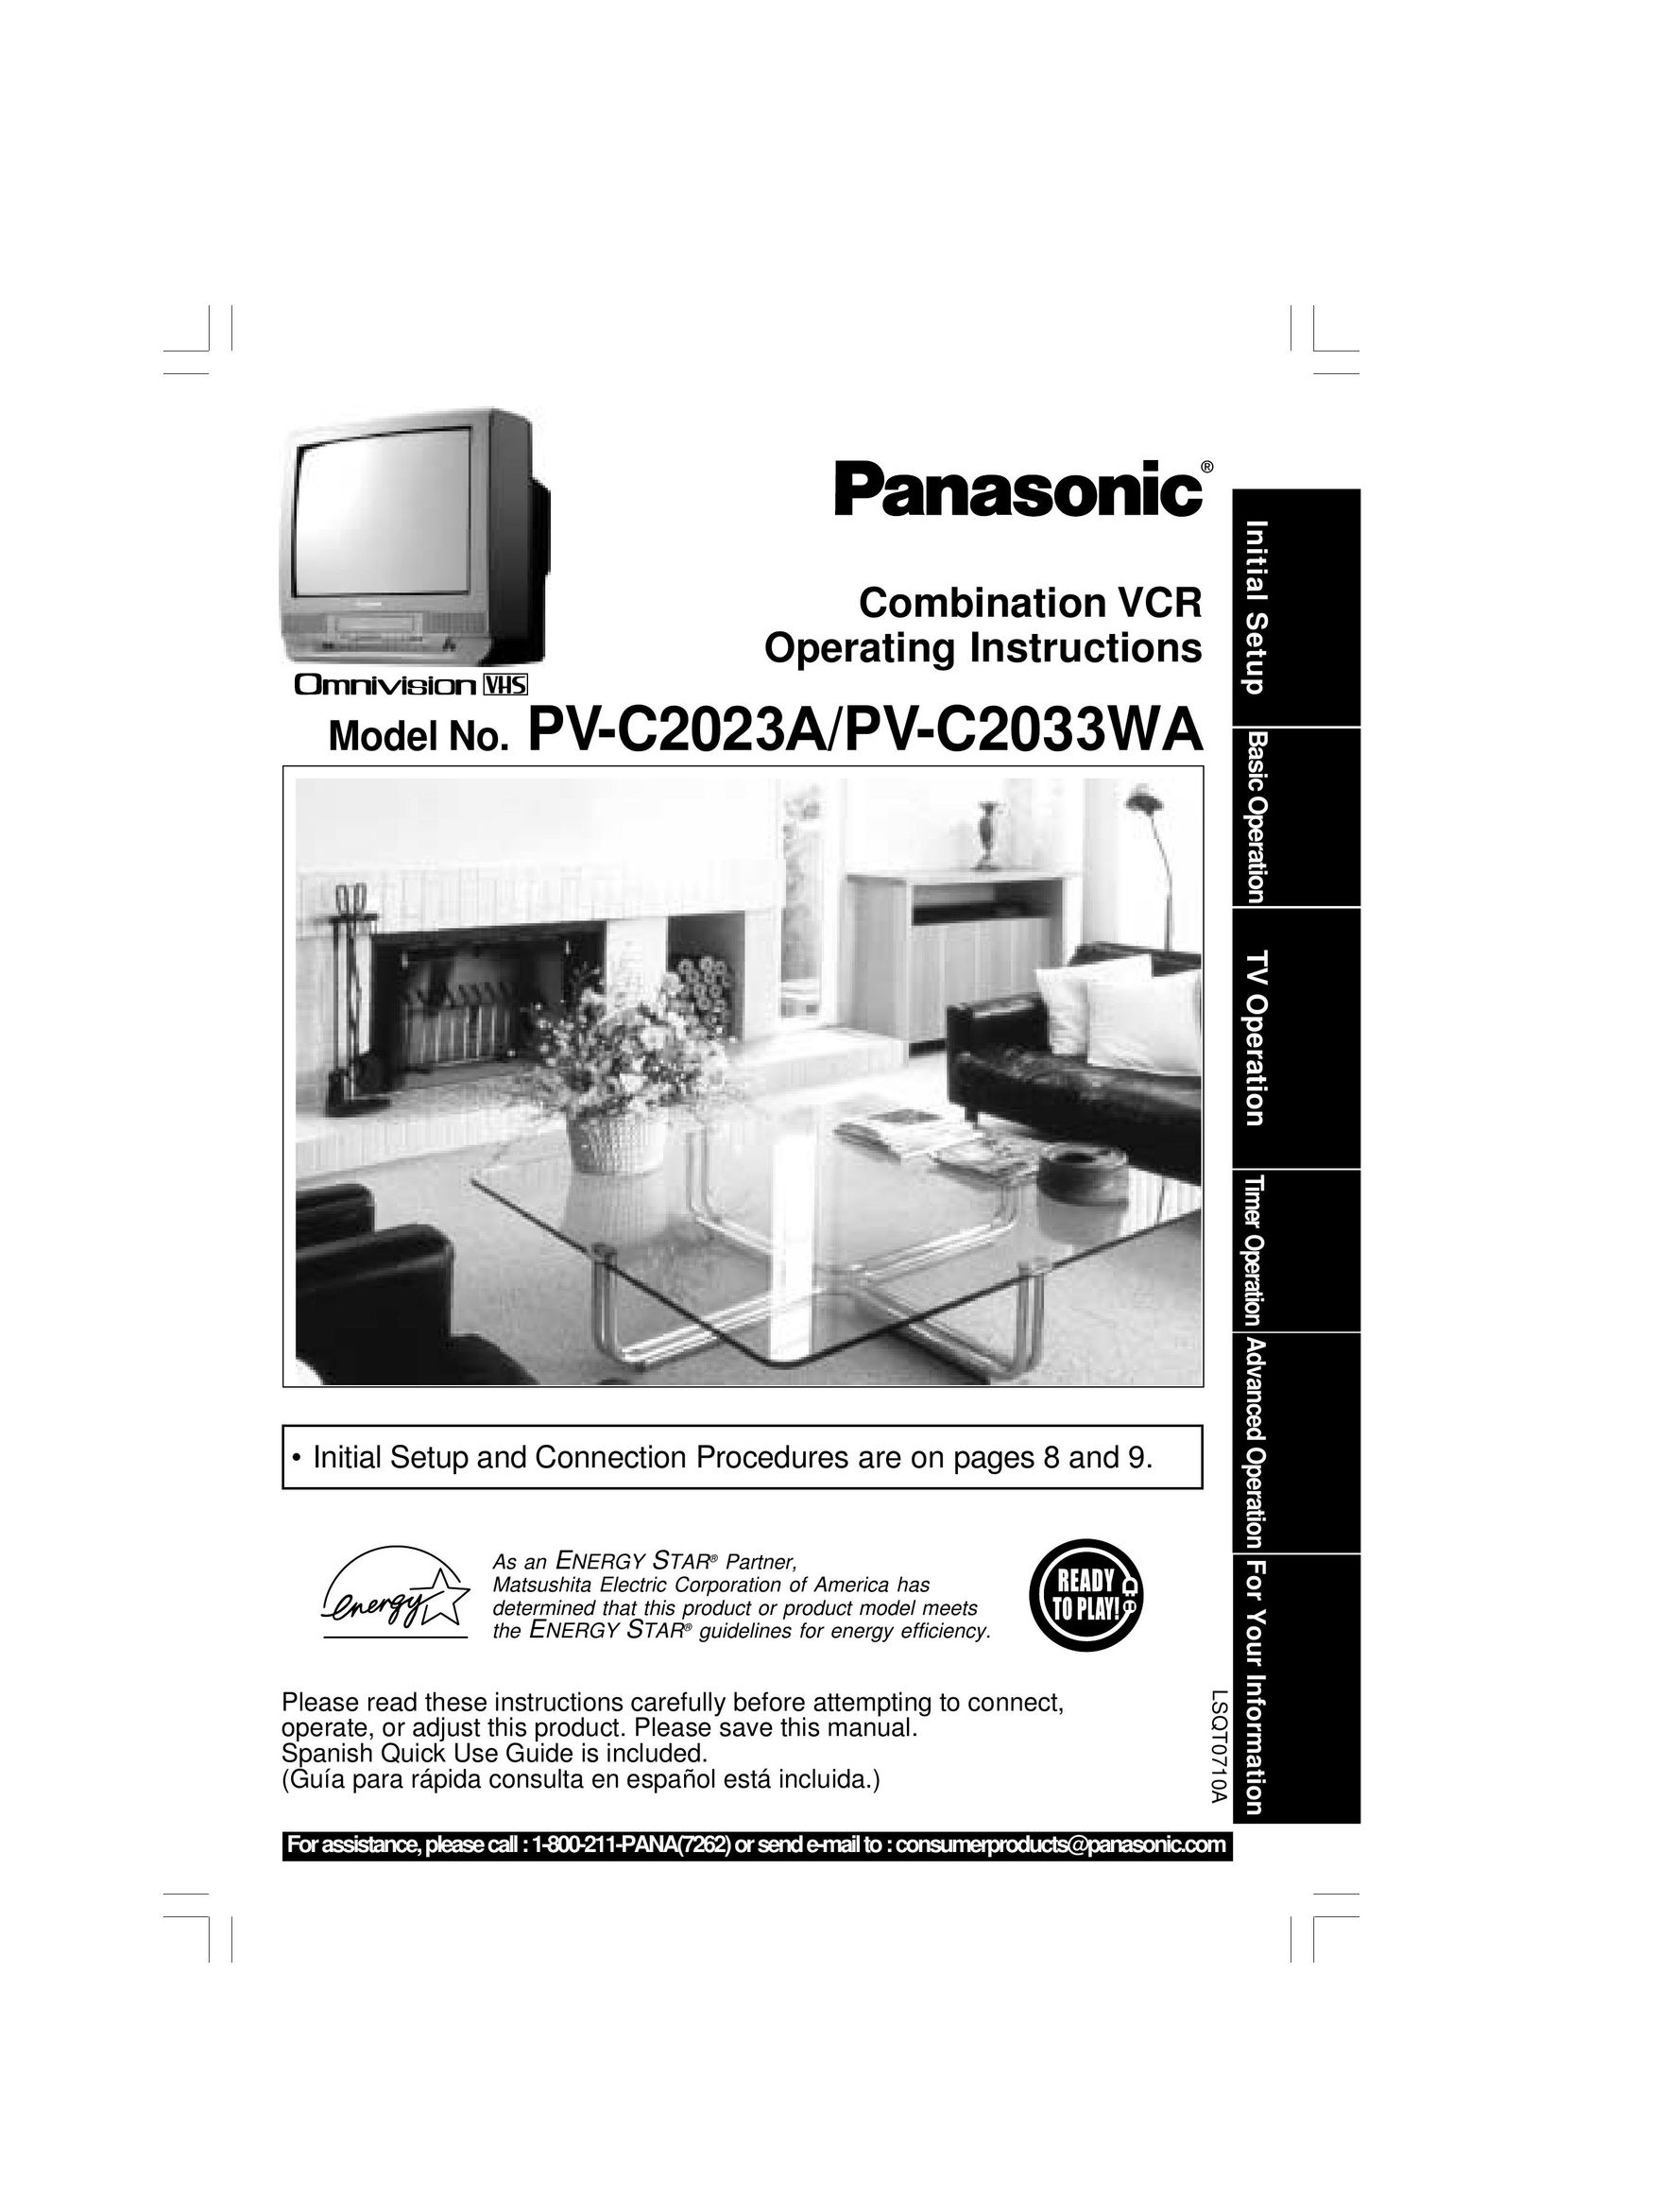 Panasonic PV-C2023A TV VCR Combo User Manual